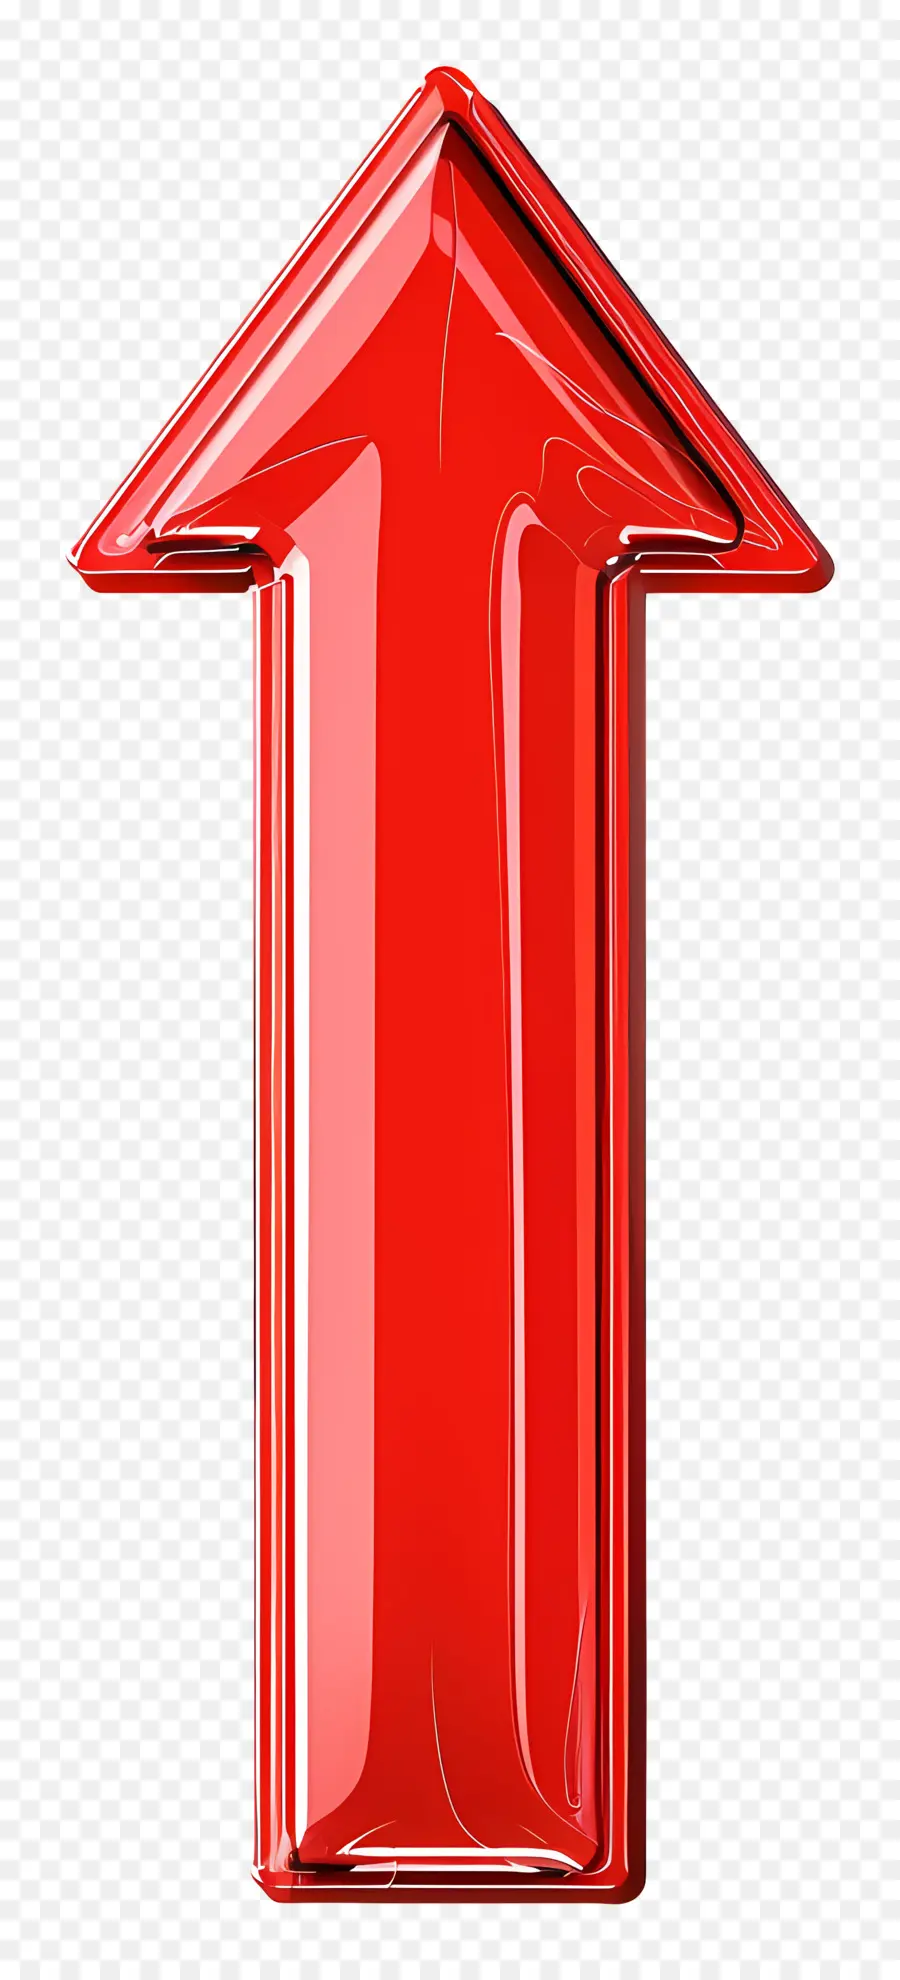 freccia rossa - Freccia rossa su sfondo nero, materiale plastico trasparente